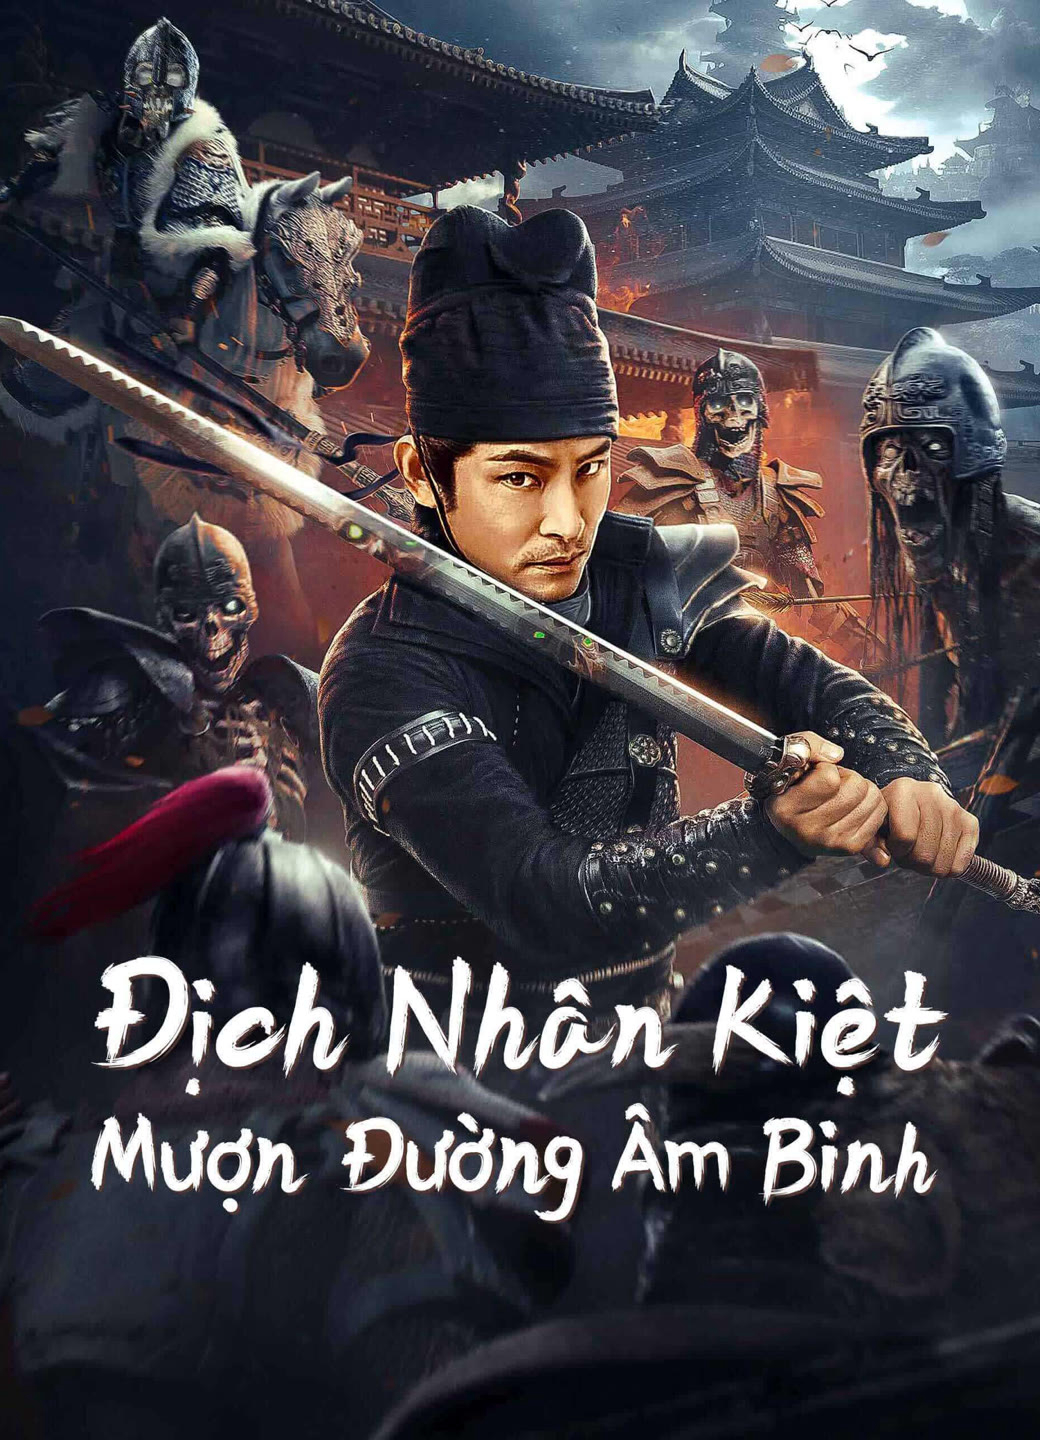 Poster Phim Địch Nhân Kiệt: Mượn Đường Âm Binh (Di Renjie Secret Soldier Borrows the Road)